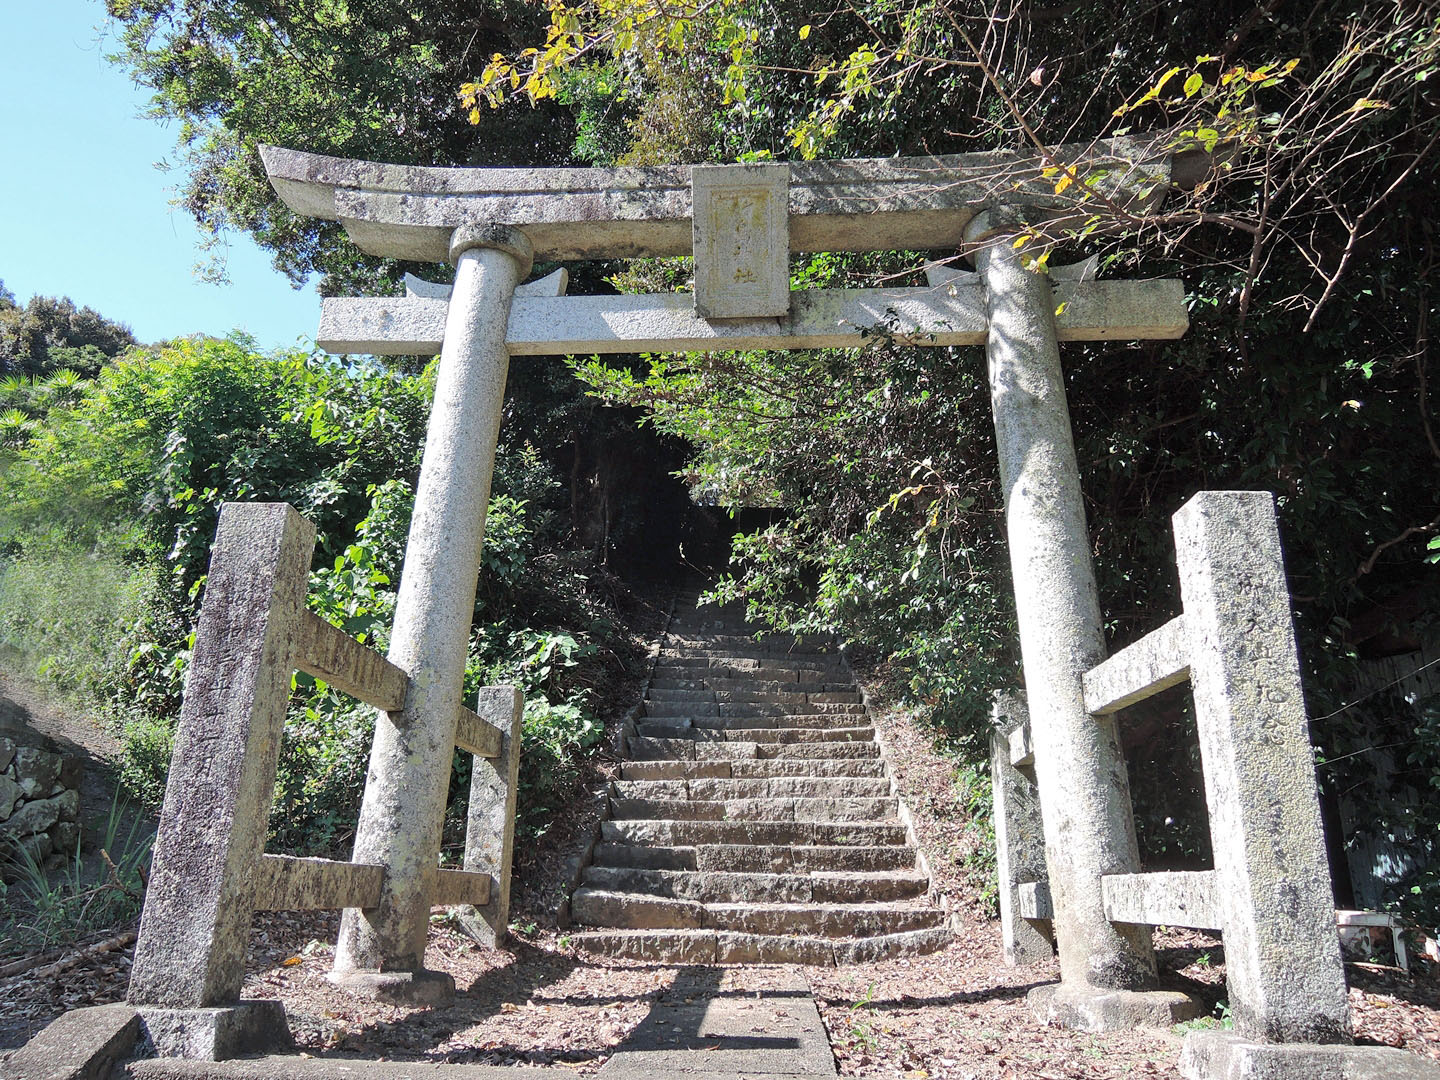 竹島神社へ上がる階段の前にある石の鳥居。鳥居の中央に竹島神社と書かれた額があり、柱には昭和３年１２月と書かれてある。